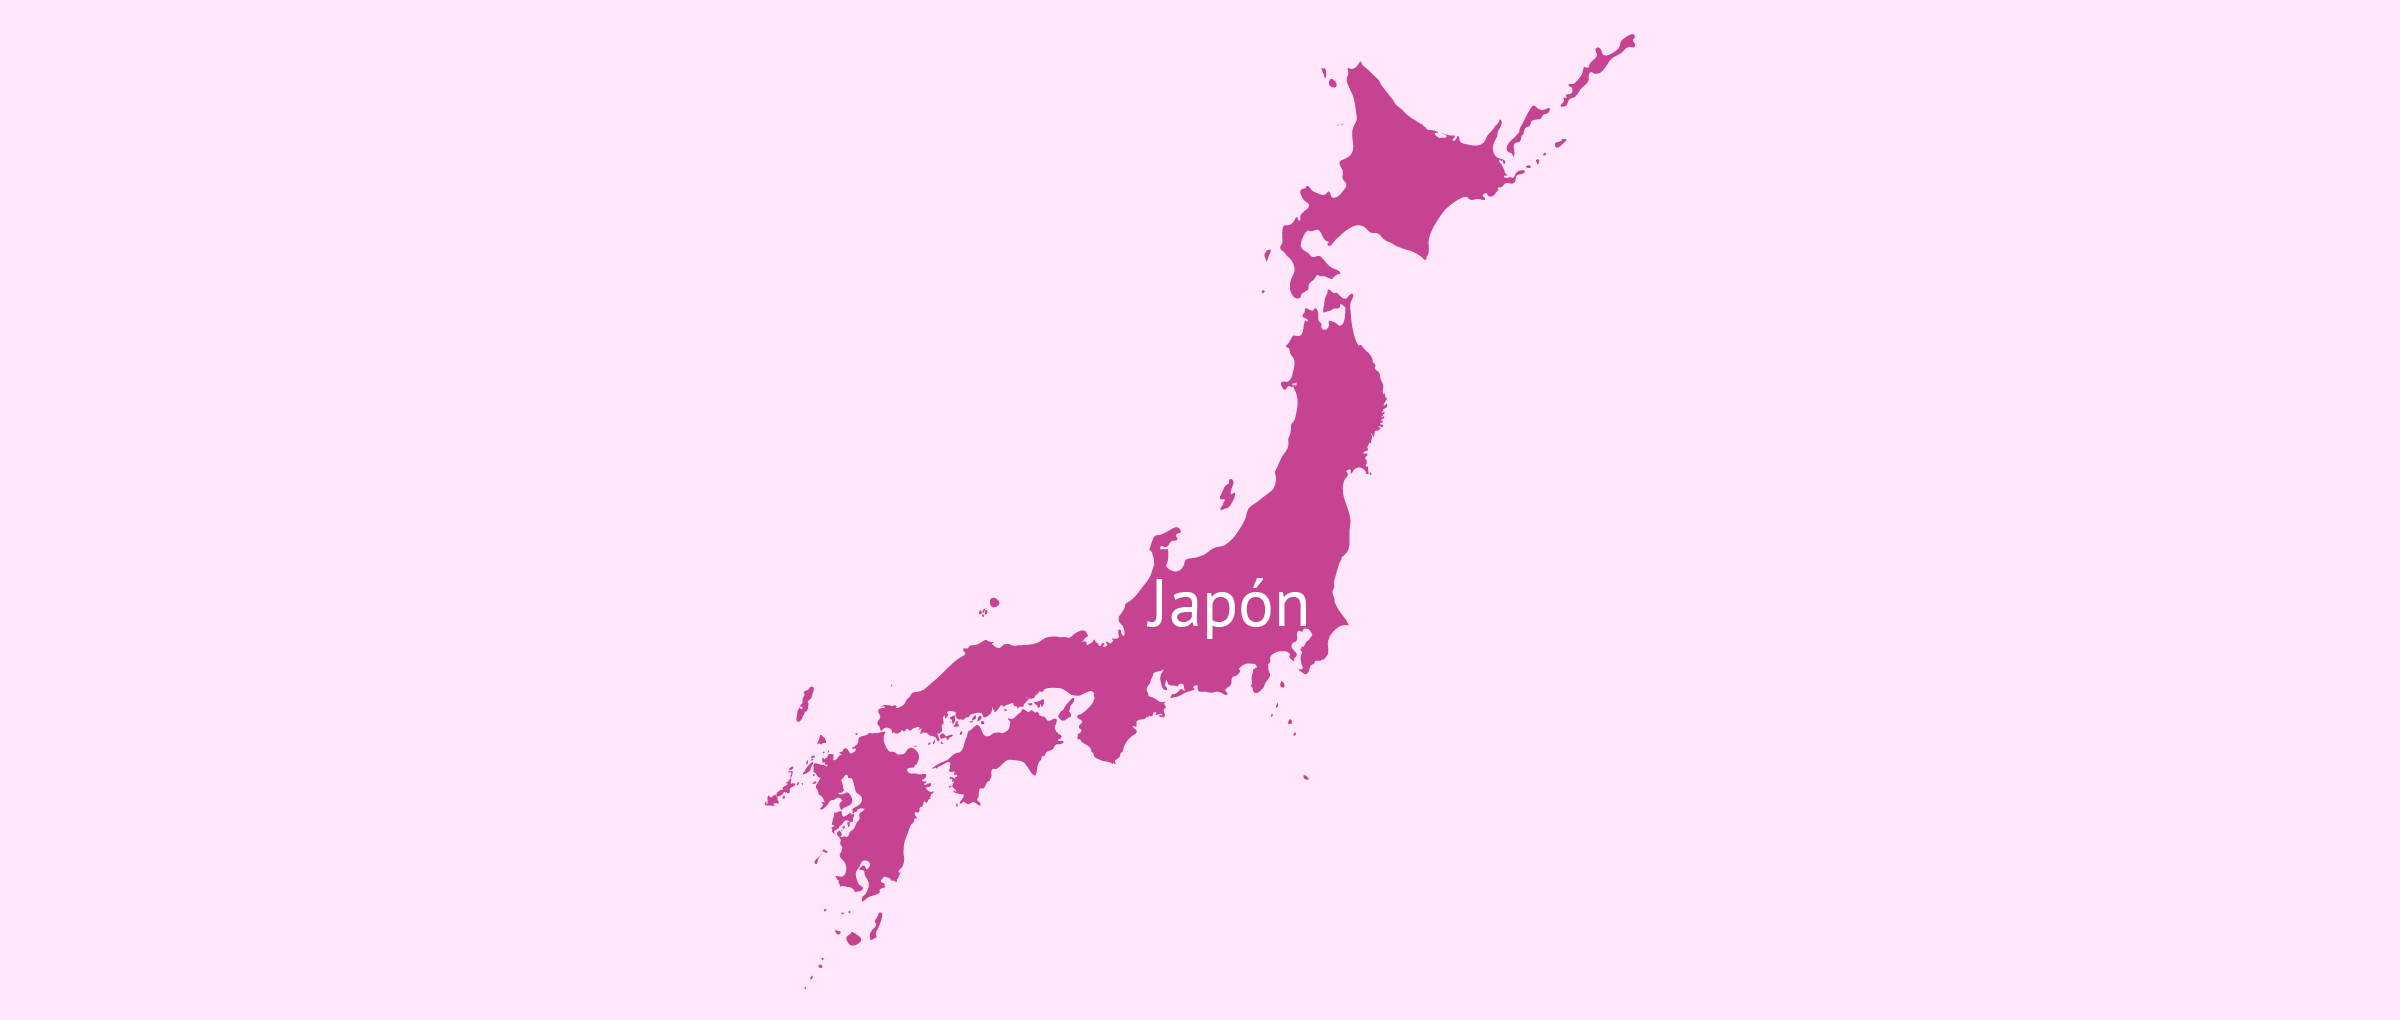 Gestación subrogada en Japón: recomendaciones legales